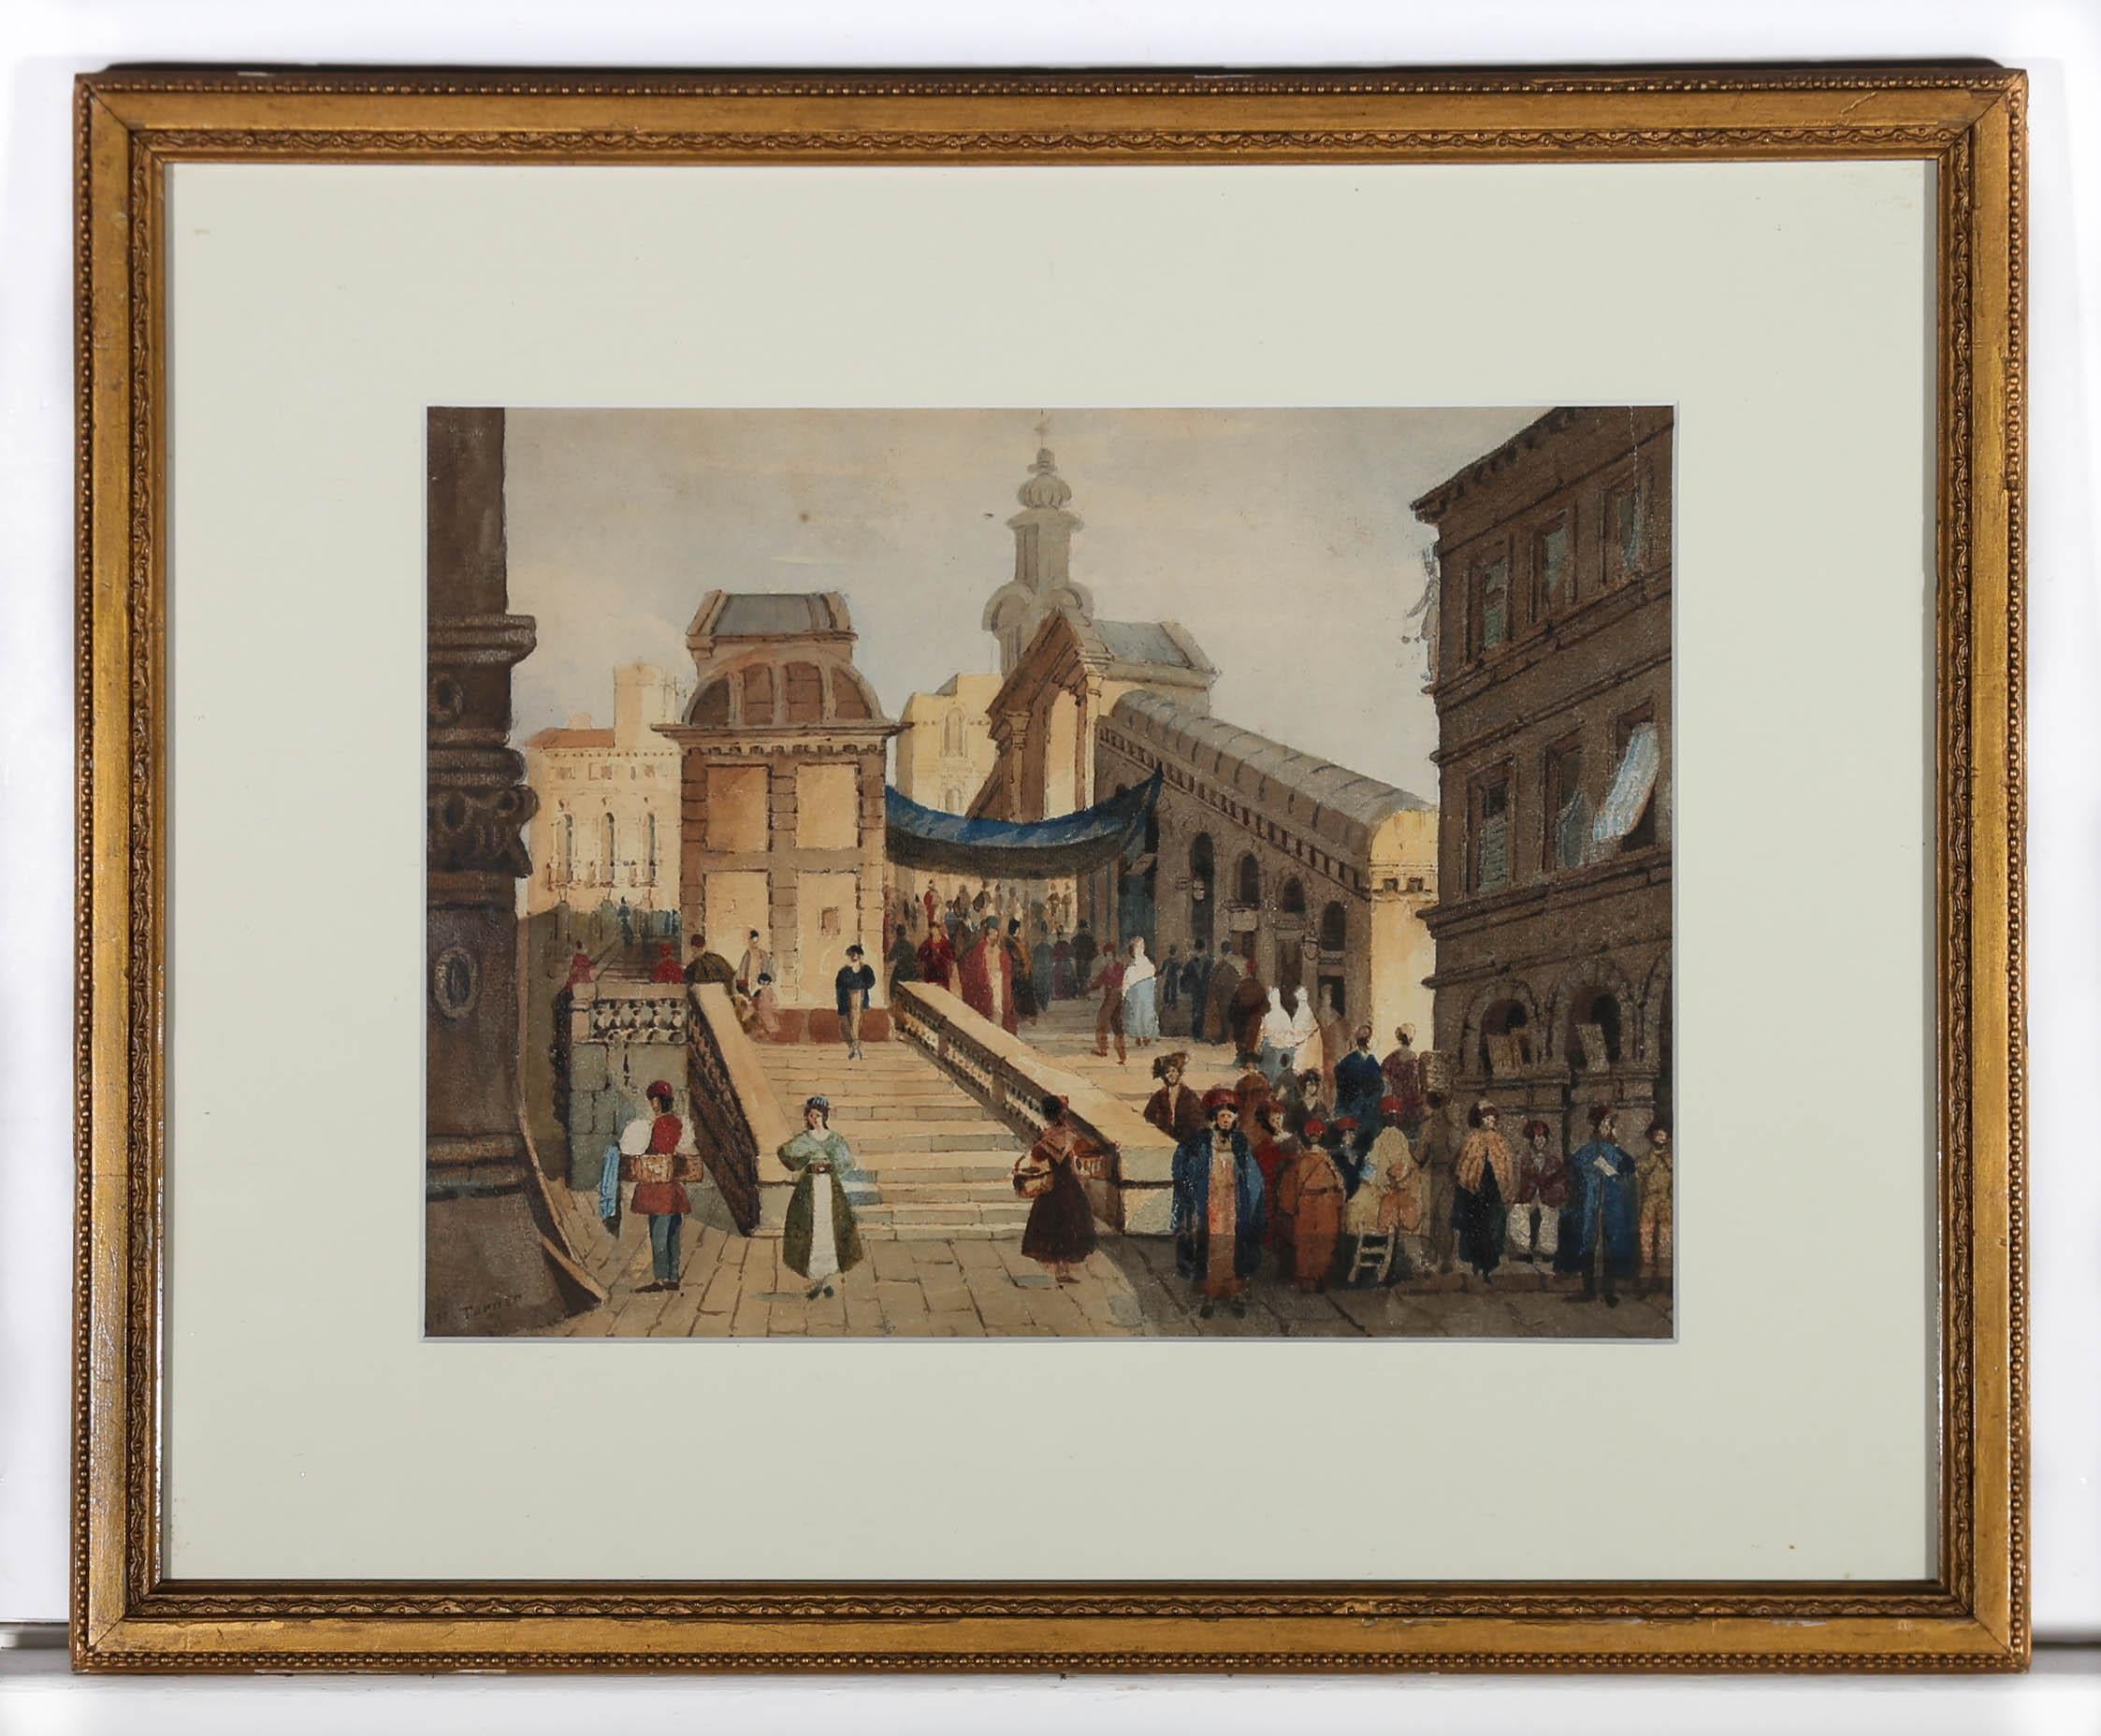 Eine helle und geschäftige kontinentale Szene in Aquarell, die die Rialto-Brücke in Venedig darstellt. Das Gemälde ist in der linken unteren Ecke vom Künstler signiert. Neu montiert in einem schlanken vergoldeten Rahmen mit Perlschnurverlauf. Auf